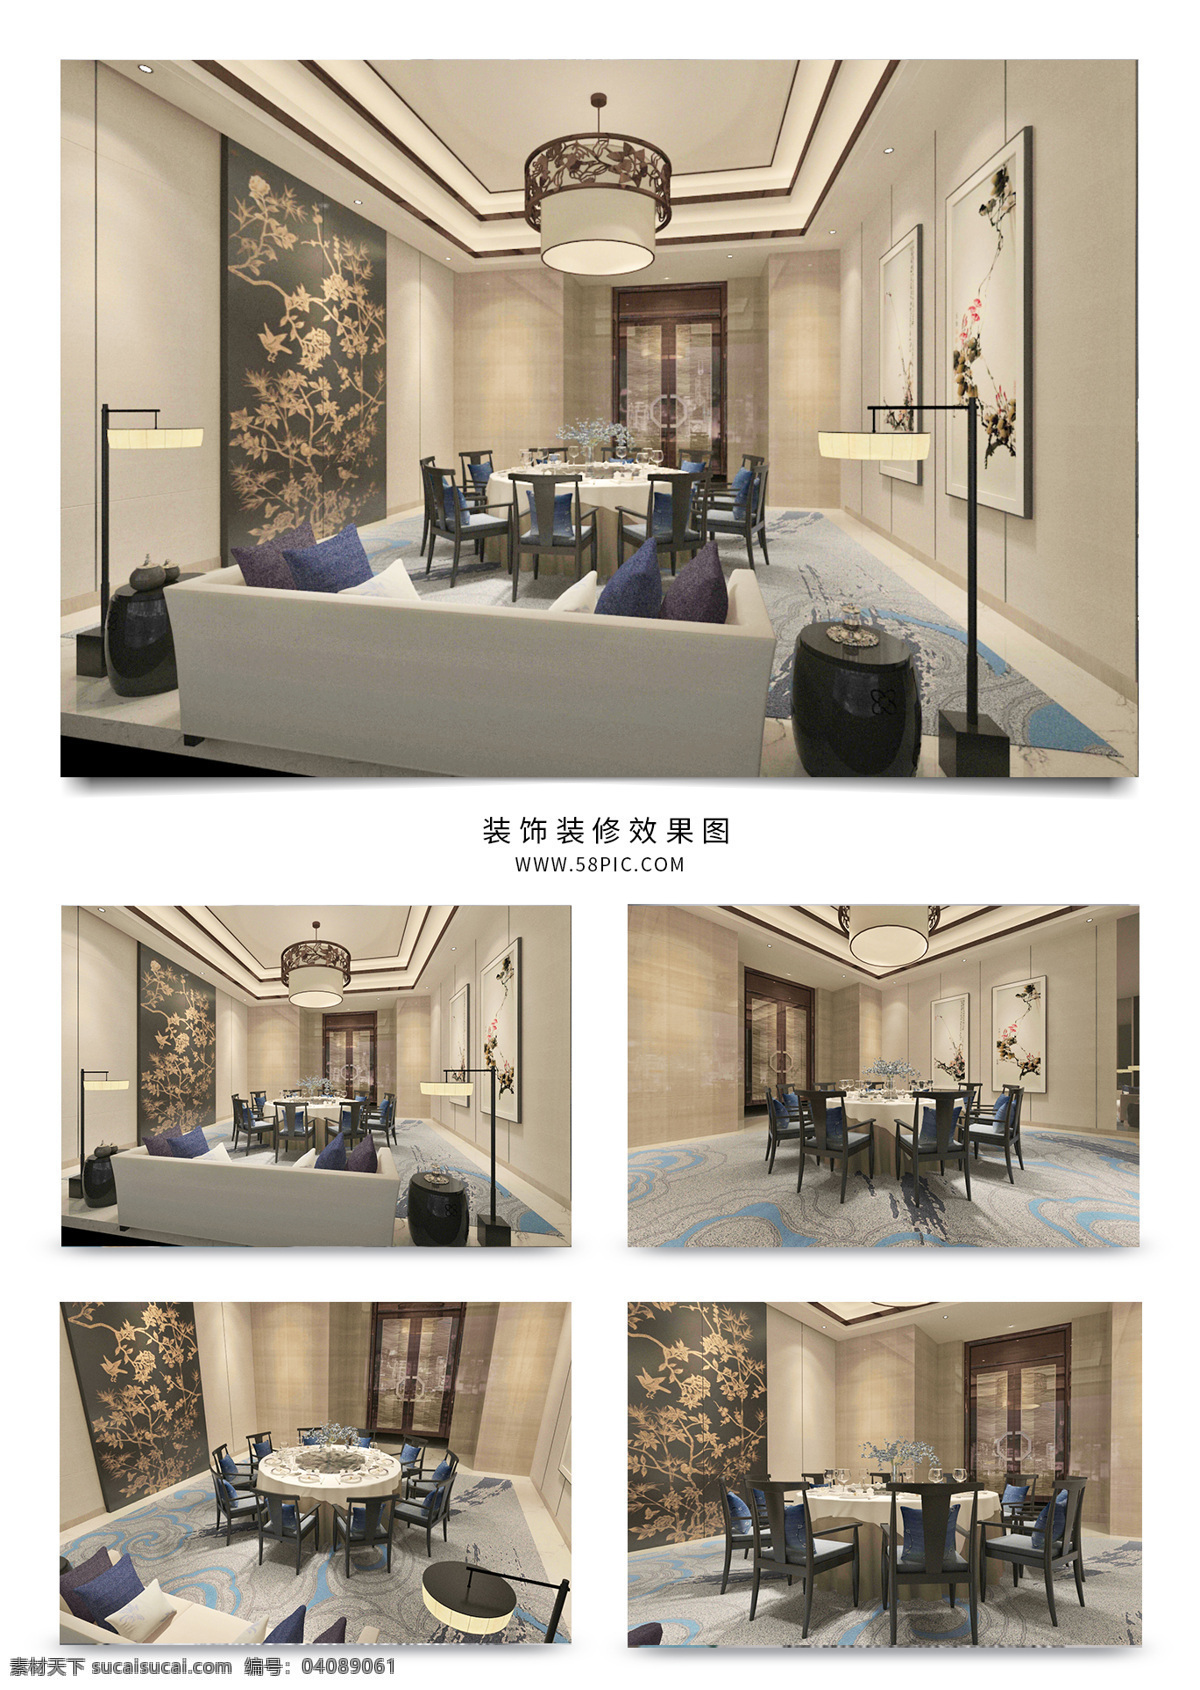 新 中式 风格 酒店 包厢 效果图 餐饮 吊灯 壁纸 室内设计 工装 模型 落地灯